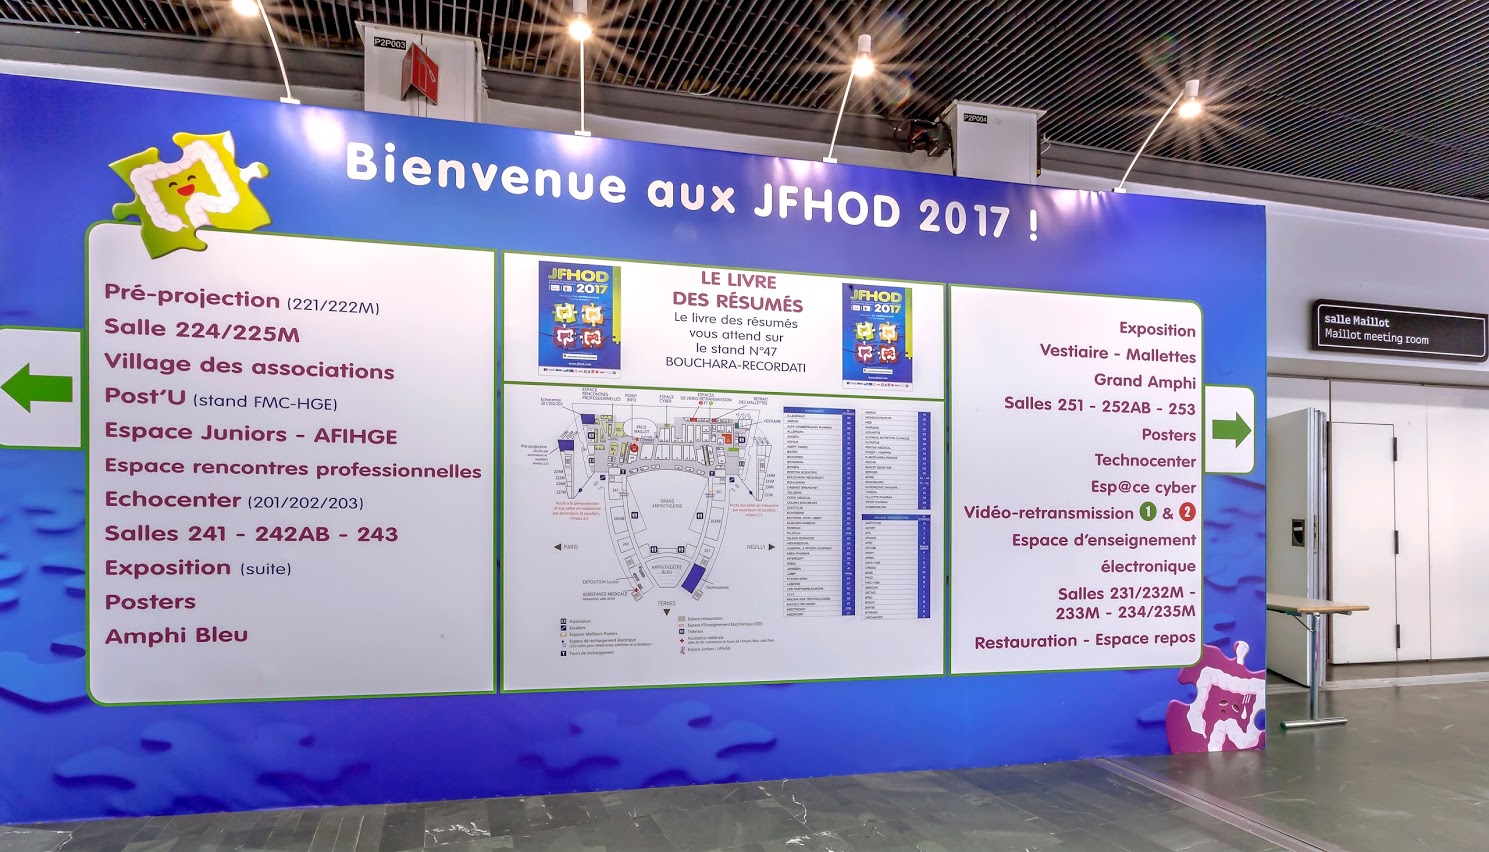 Salon "JFHOD 2017 @ Pdc Porte Maillot, Paris"